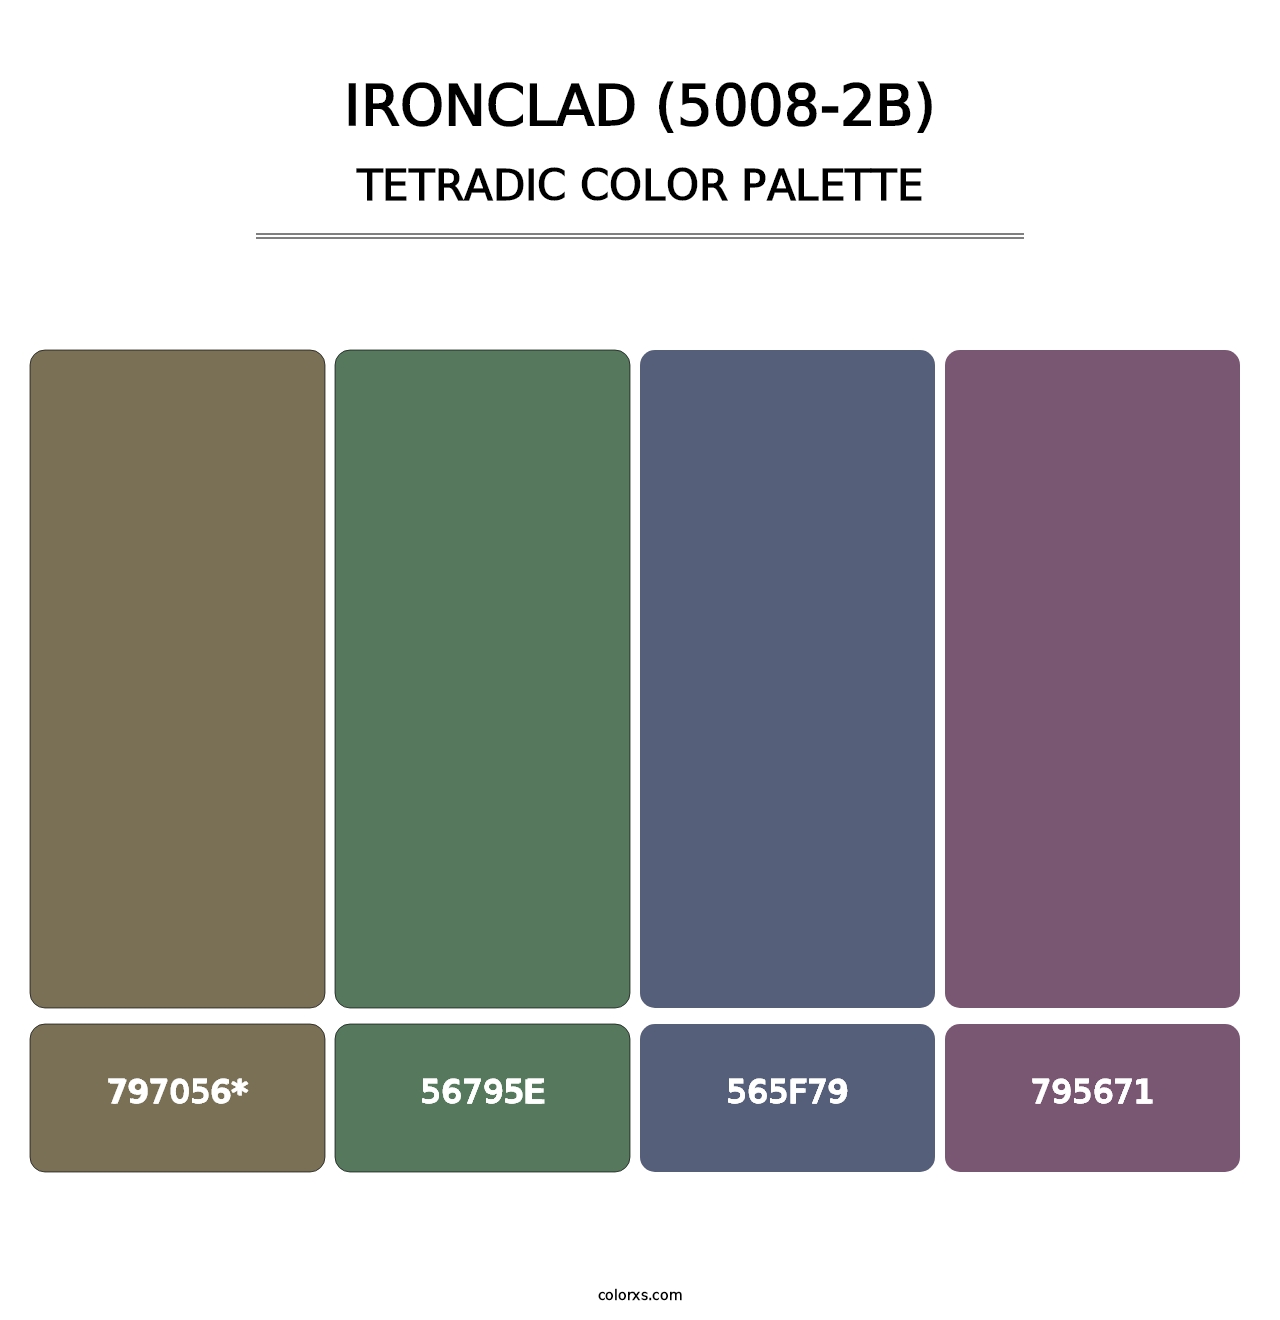 Ironclad (5008-2B) - Tetradic Color Palette